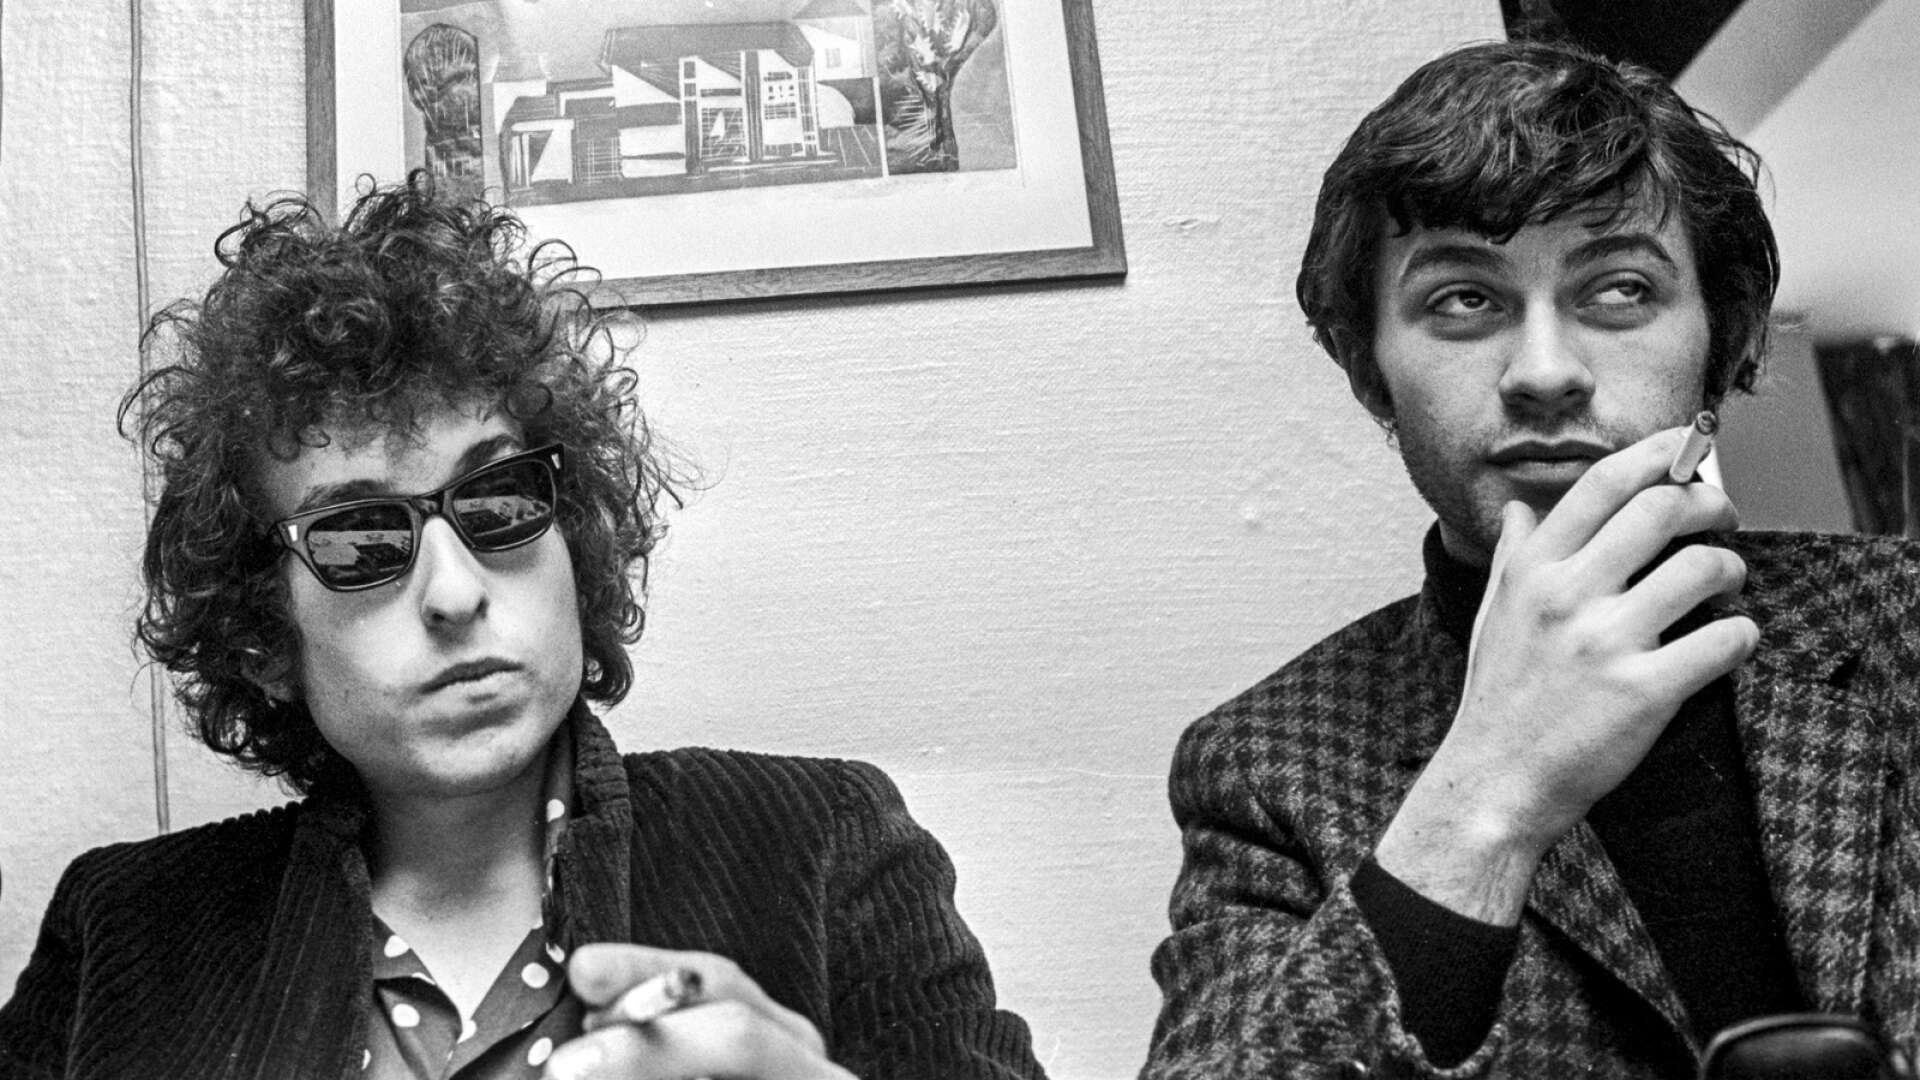 ”Bob Dylan gav rockmusiken intellekt och litteraturen ett par svarta solglasögon skrev jag när Dylan fick sitt Nobelpris. Det var precis vad som hände under den turnén. Robbie Robertson var med och formade en musikalisk revolution.”